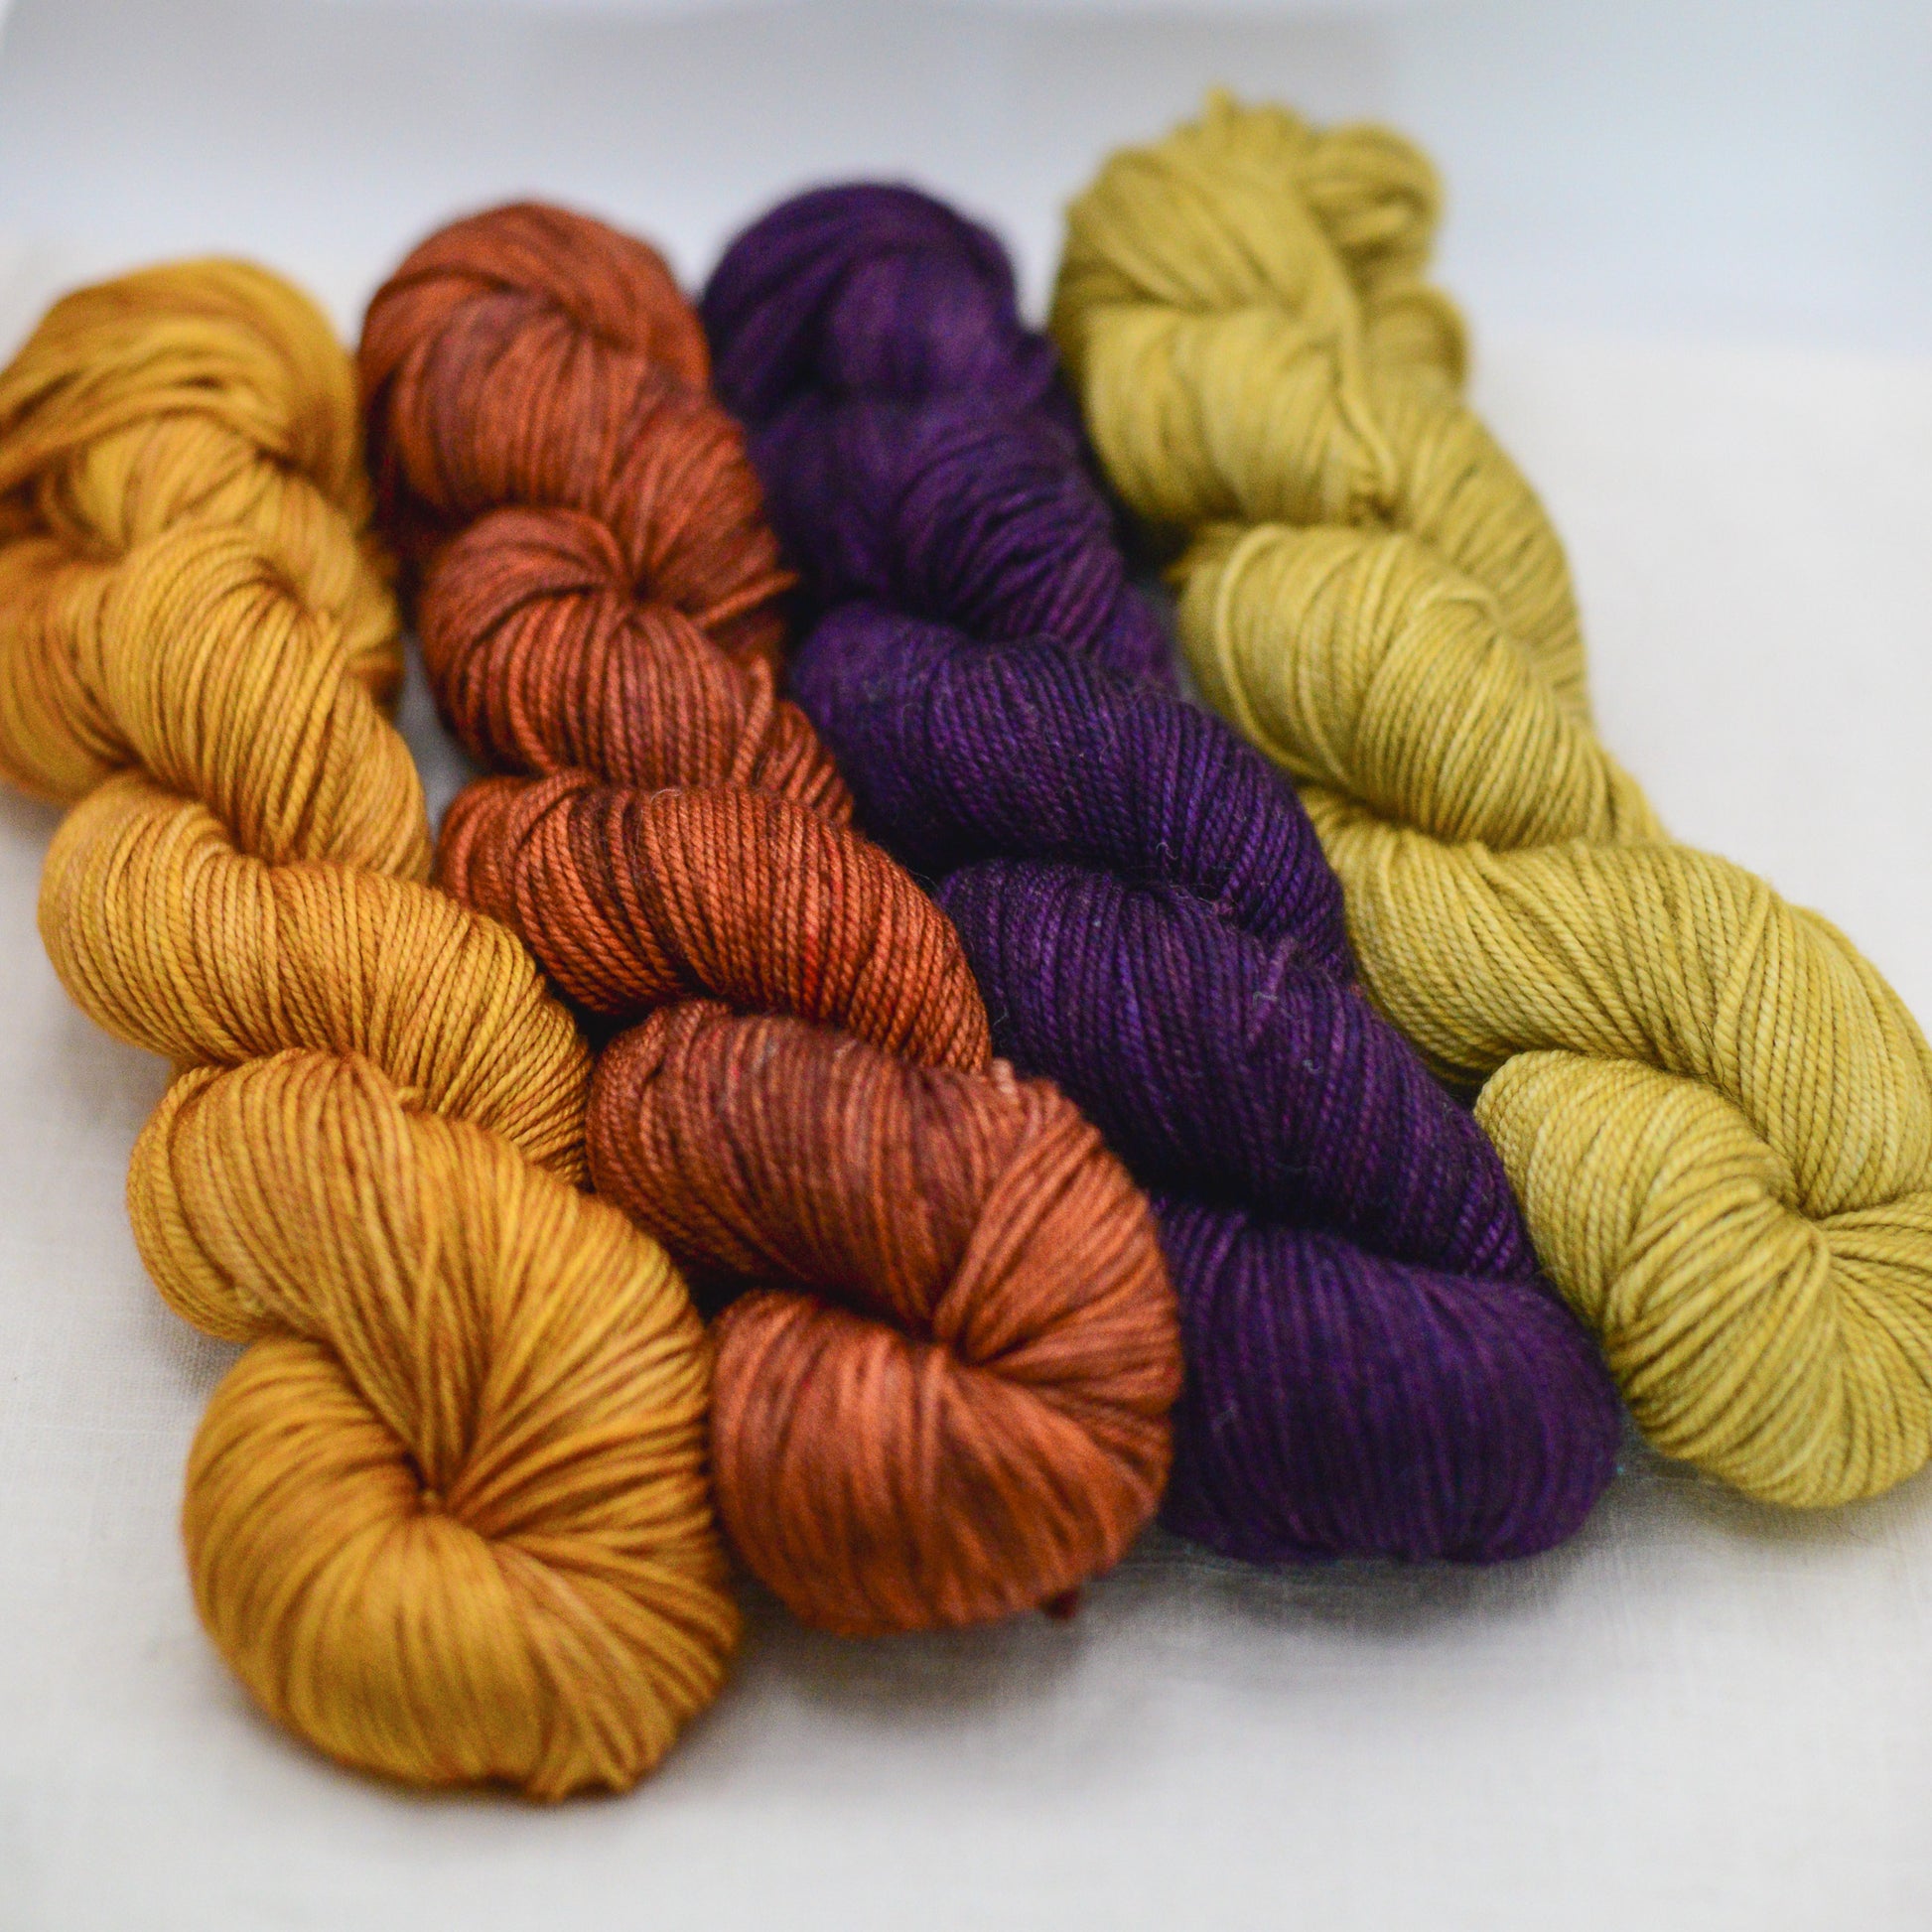 Hand dyed merino yarn, dk yarn, 4 skeins, autumn palette